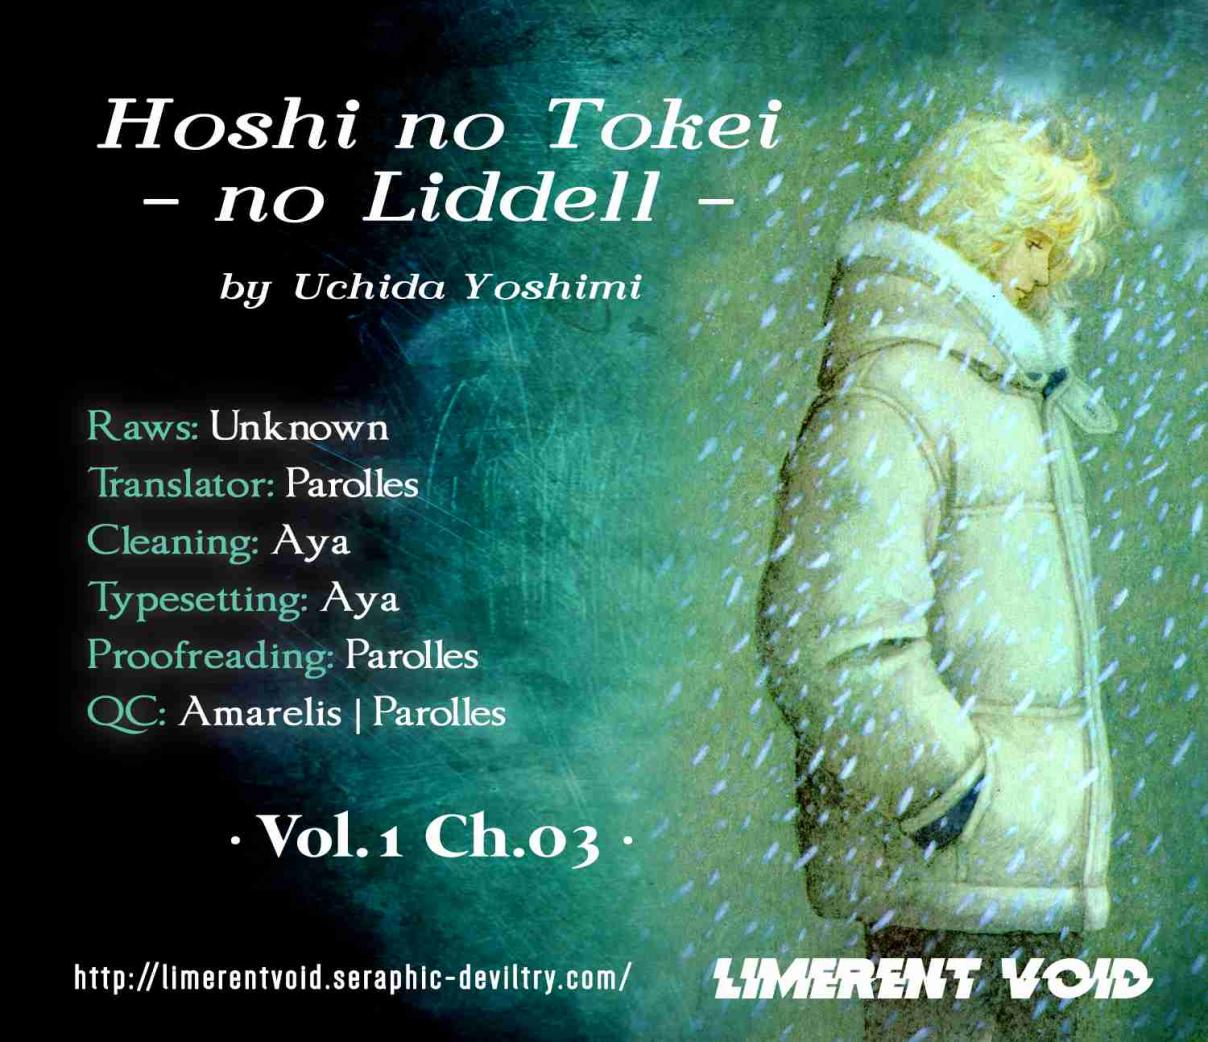 Hoshi no Tokei no Liddell Vol. 1 Ch. 3